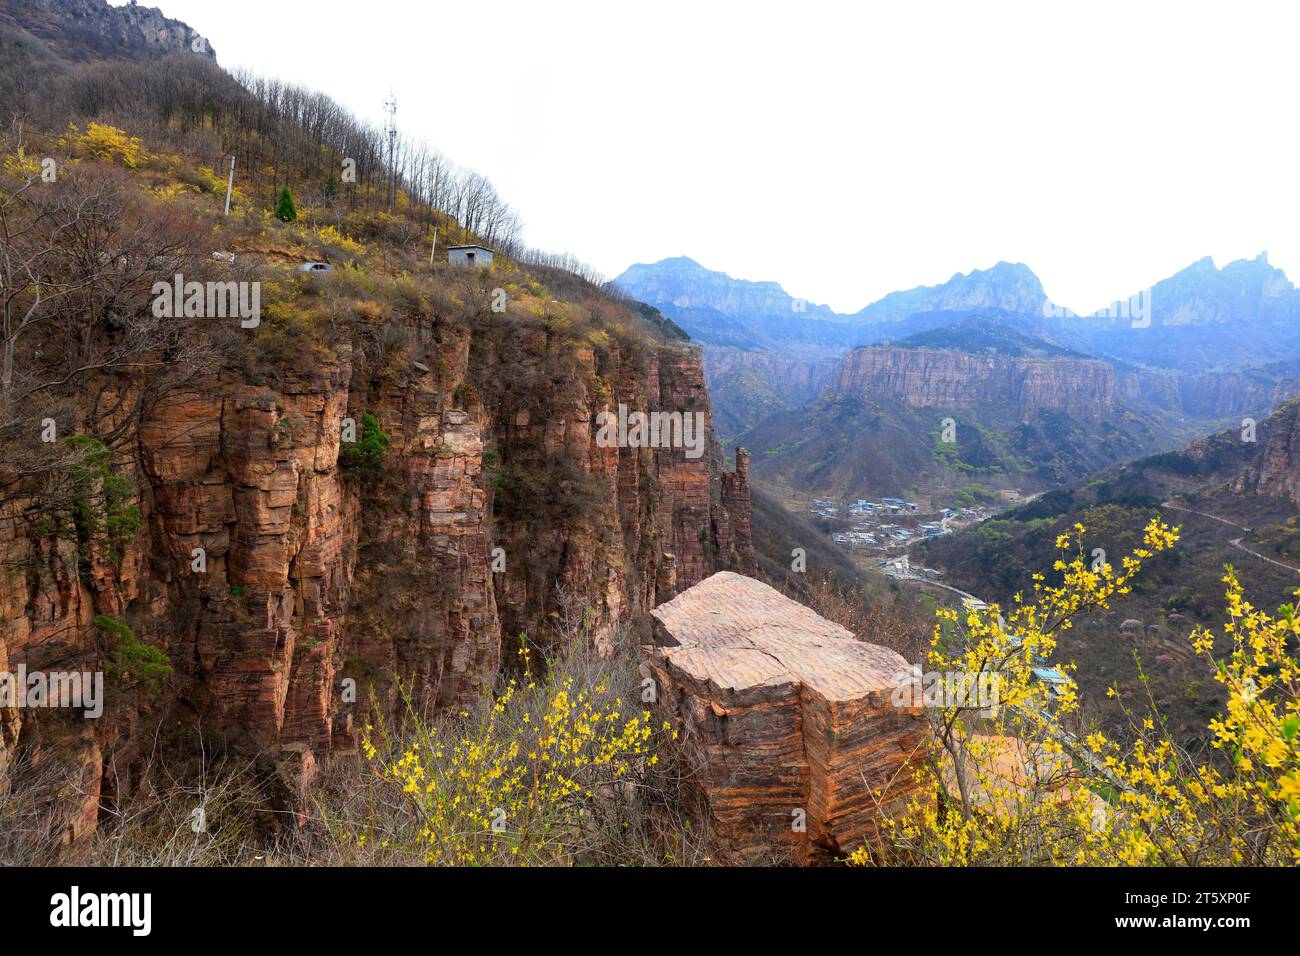 Wanxian mountains scenery, China Stock Photo